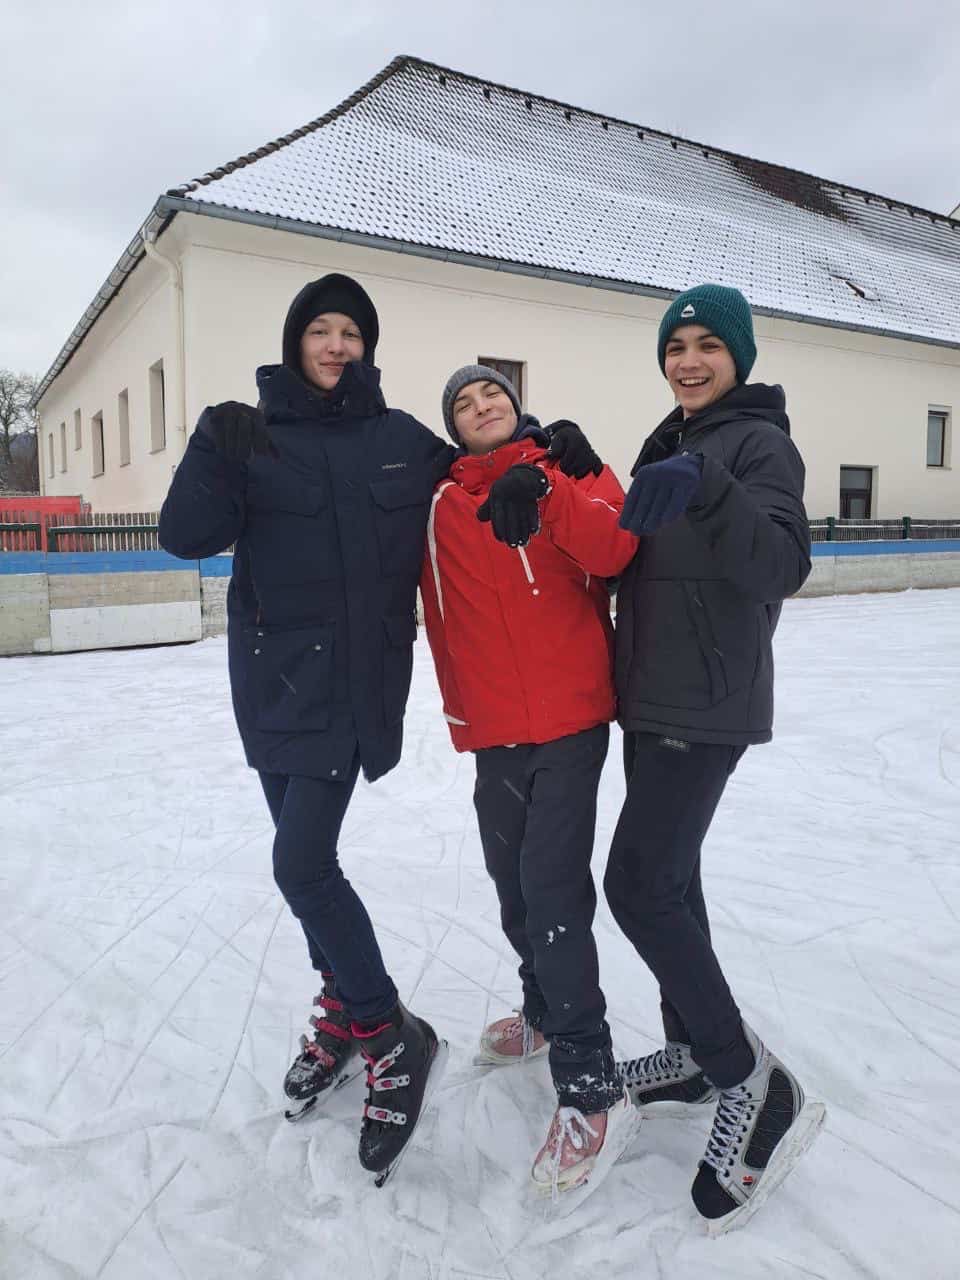 ICE SKATING IN KIRCHSCHLAG